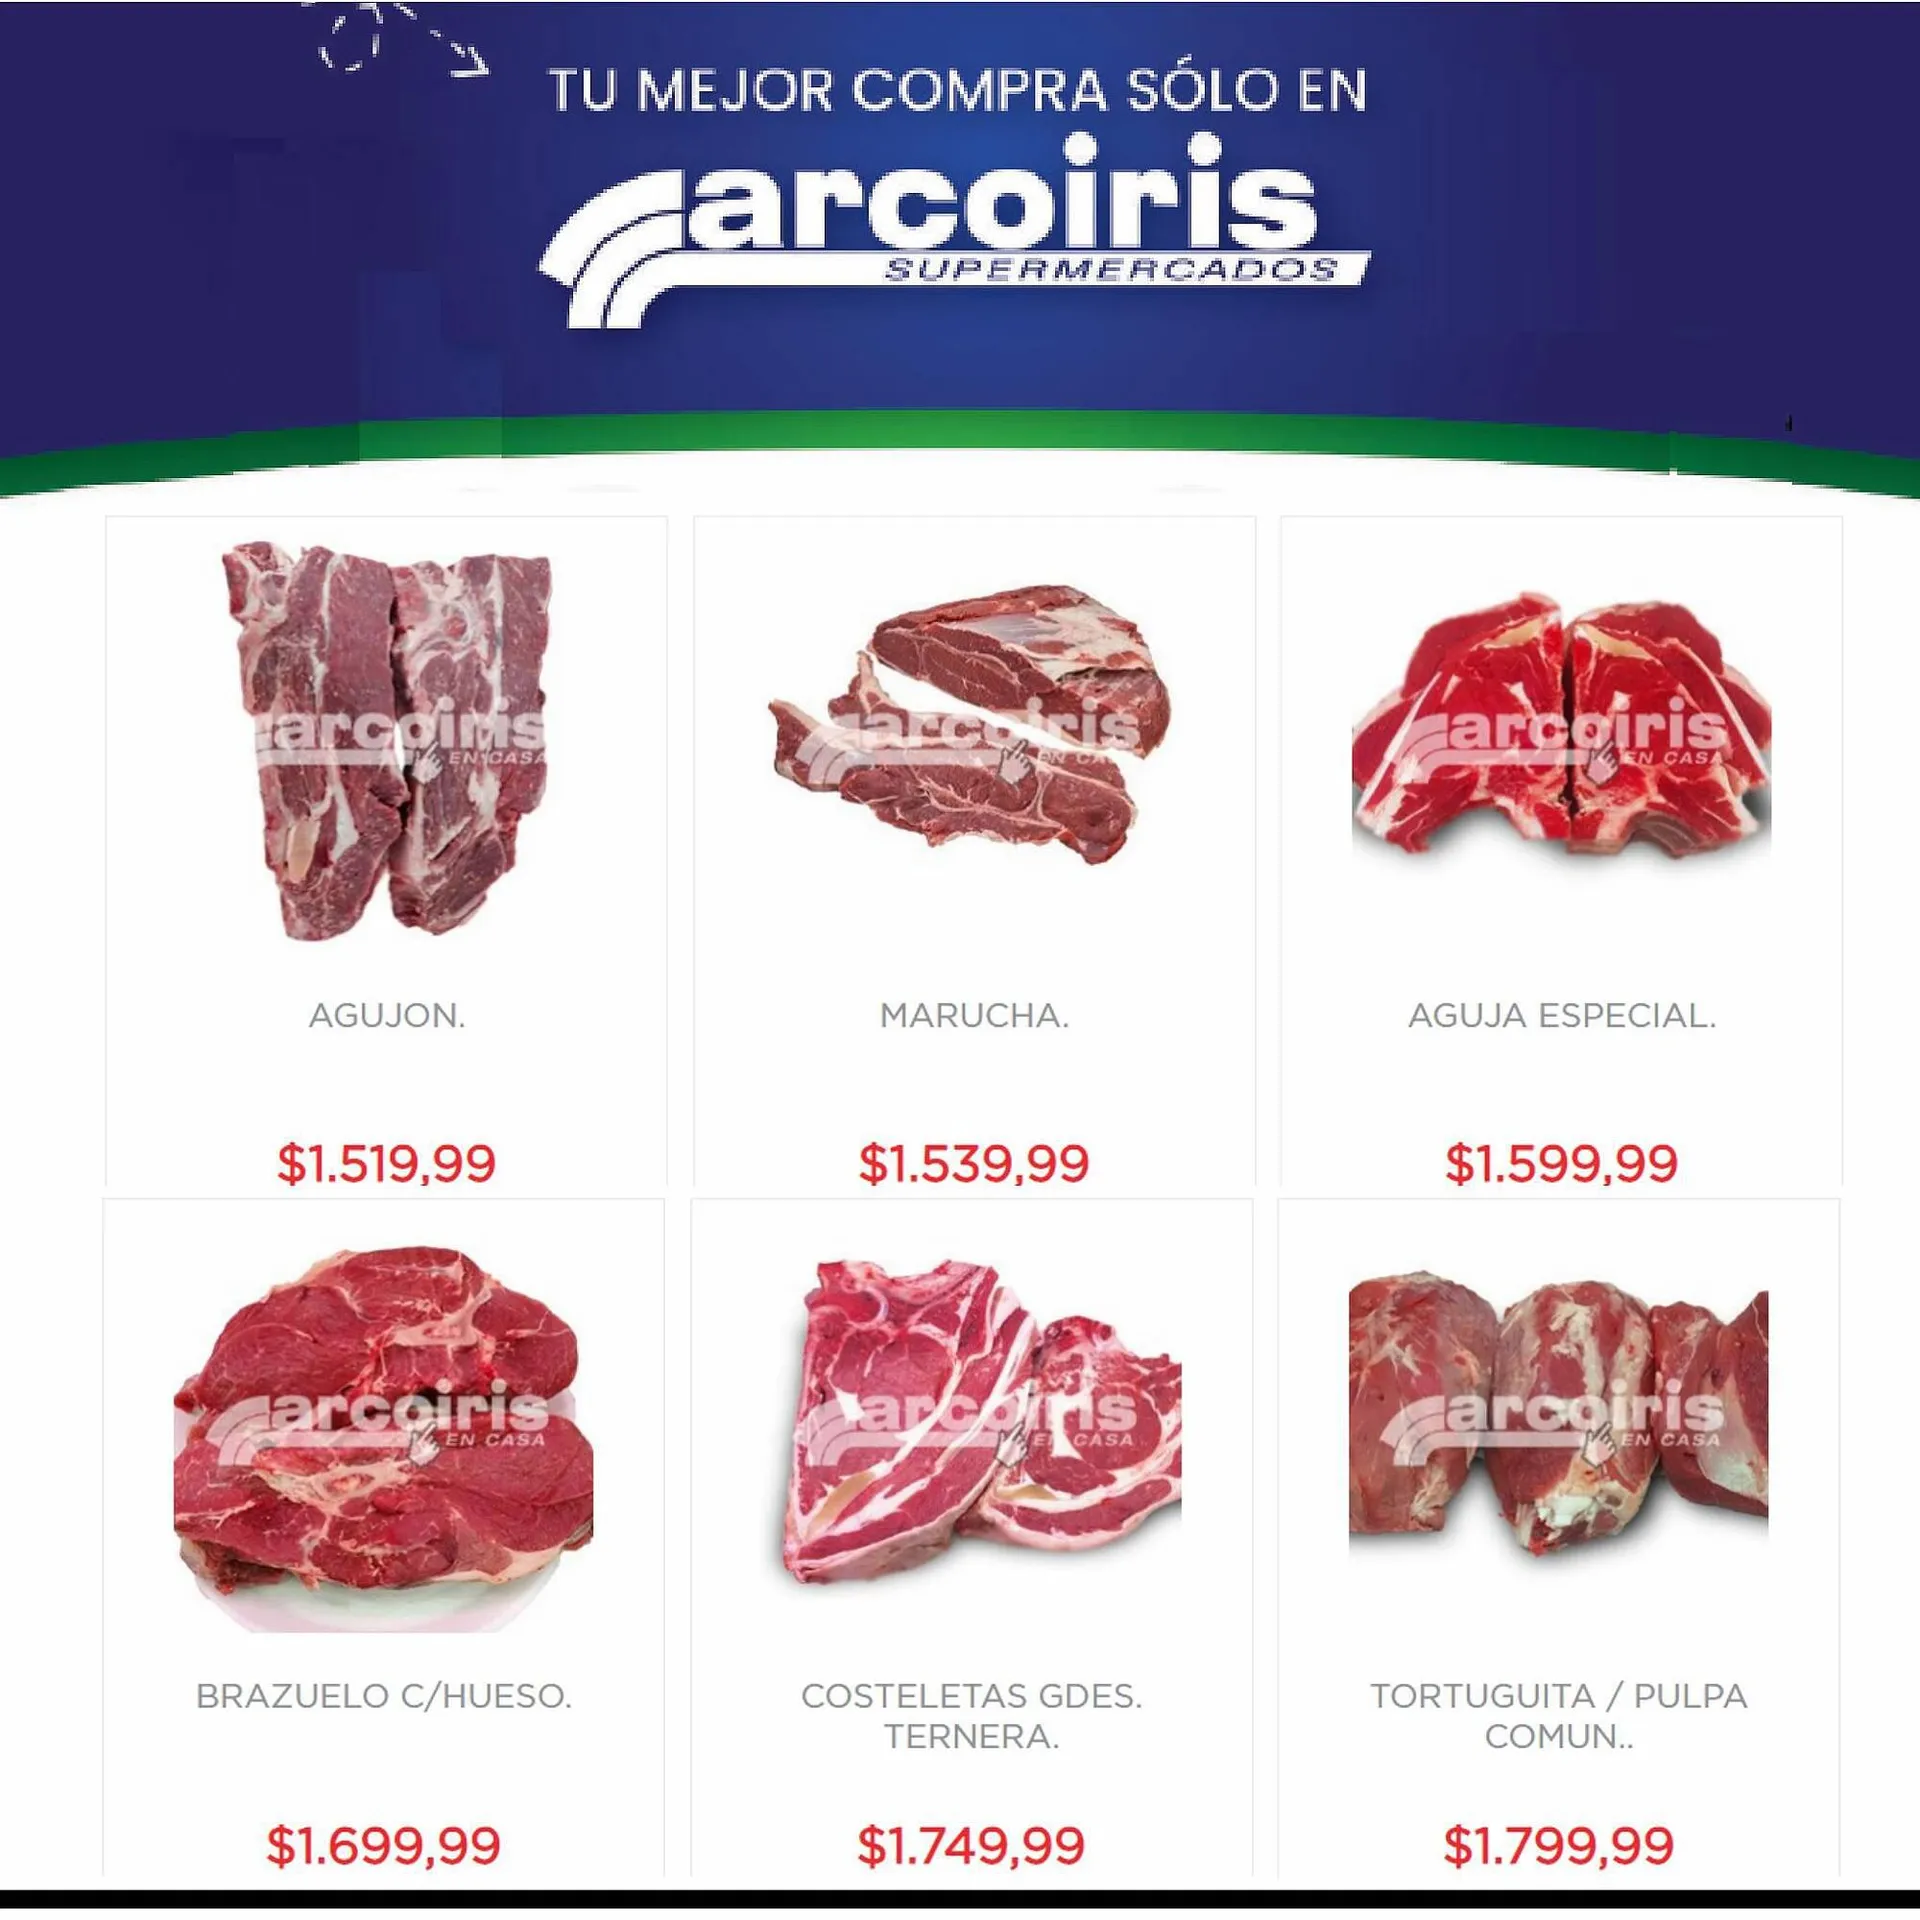 Catálogo Arcoiris Supermercados - 2